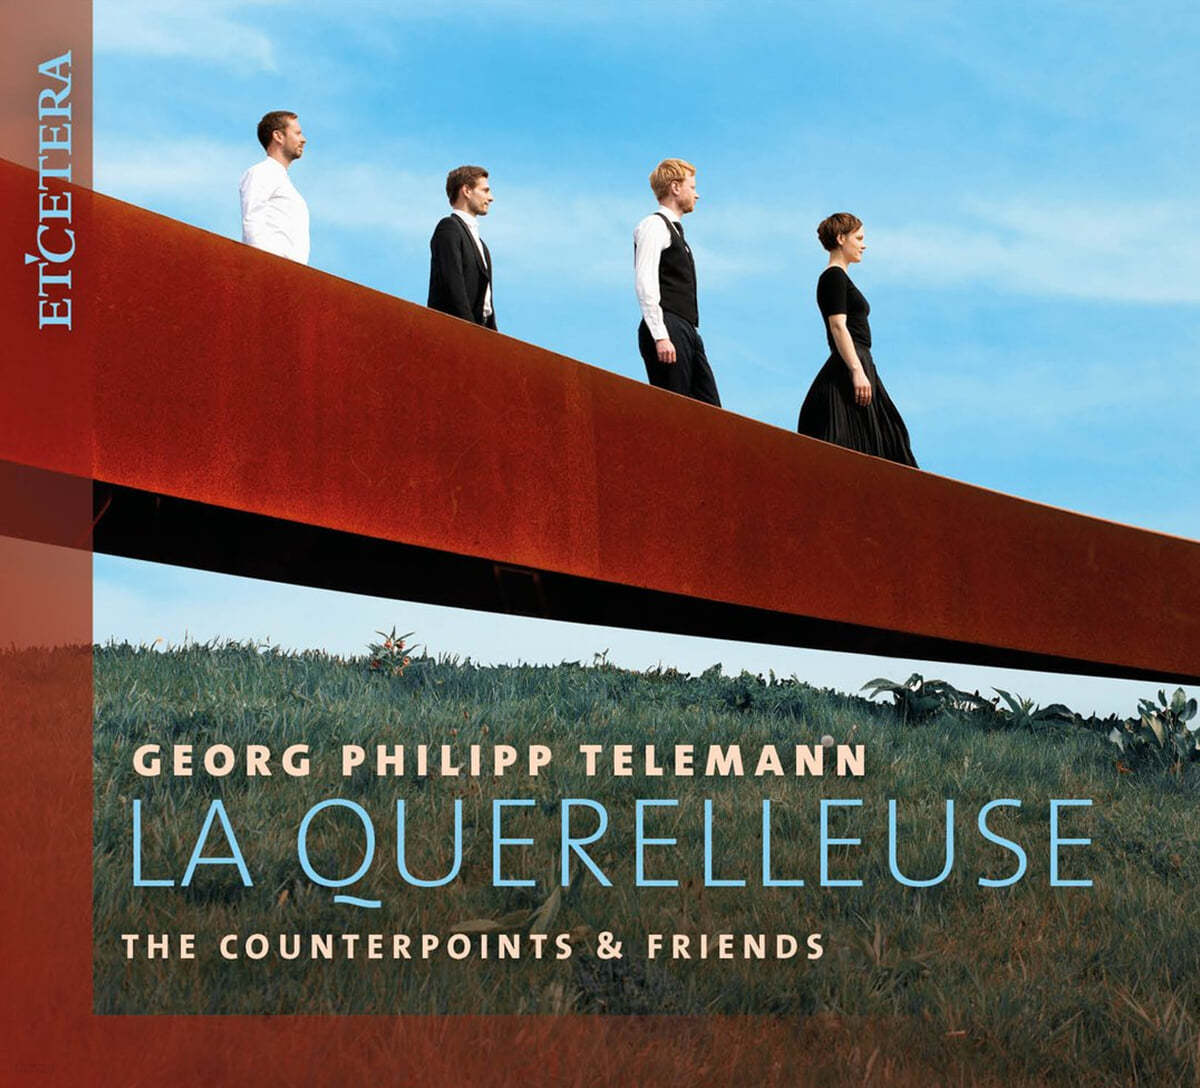 The Counterpoints & Friends - Telemann: La Querelleuse